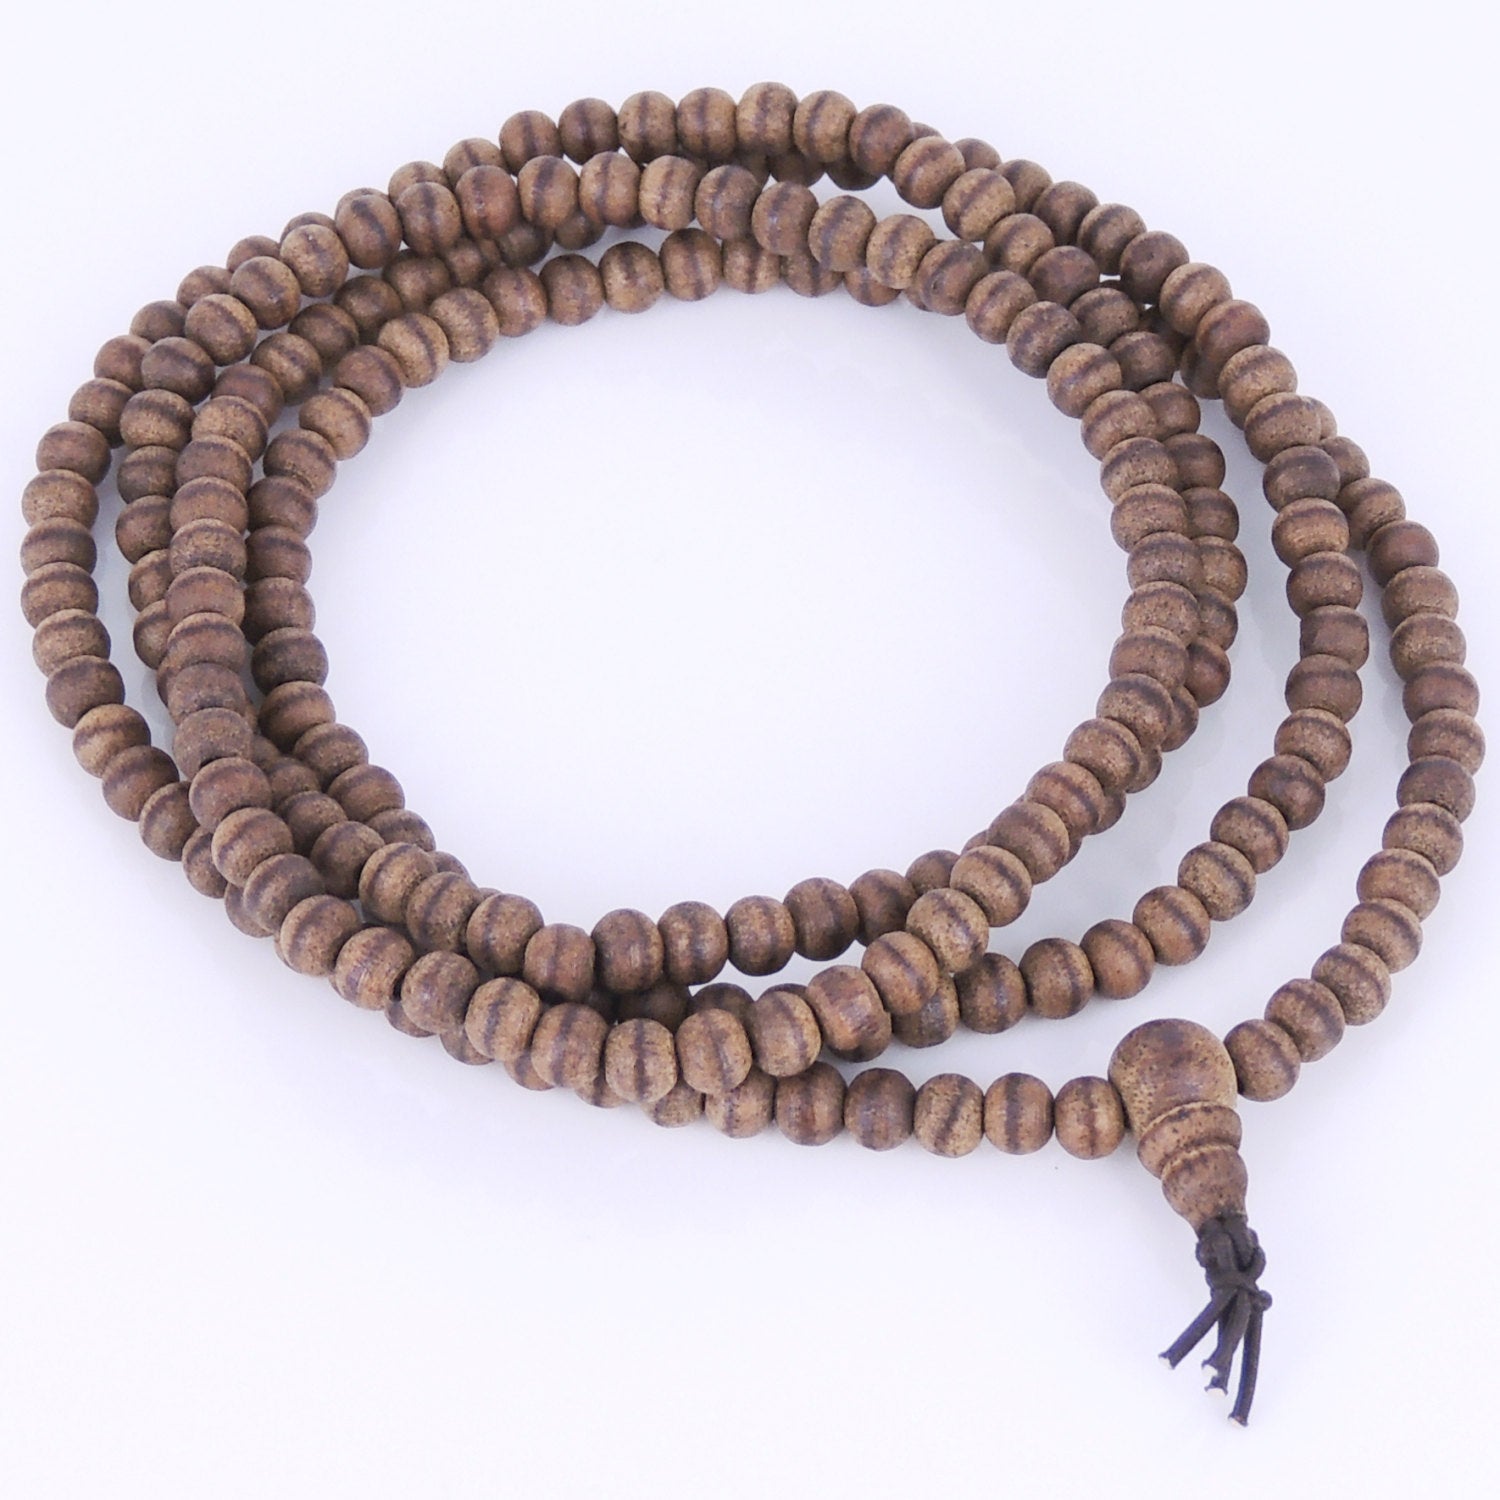 5mm Vietnamese Agarwood 216 Beads Bracelet/Necklace for Meditation - Gem & Silver AW001